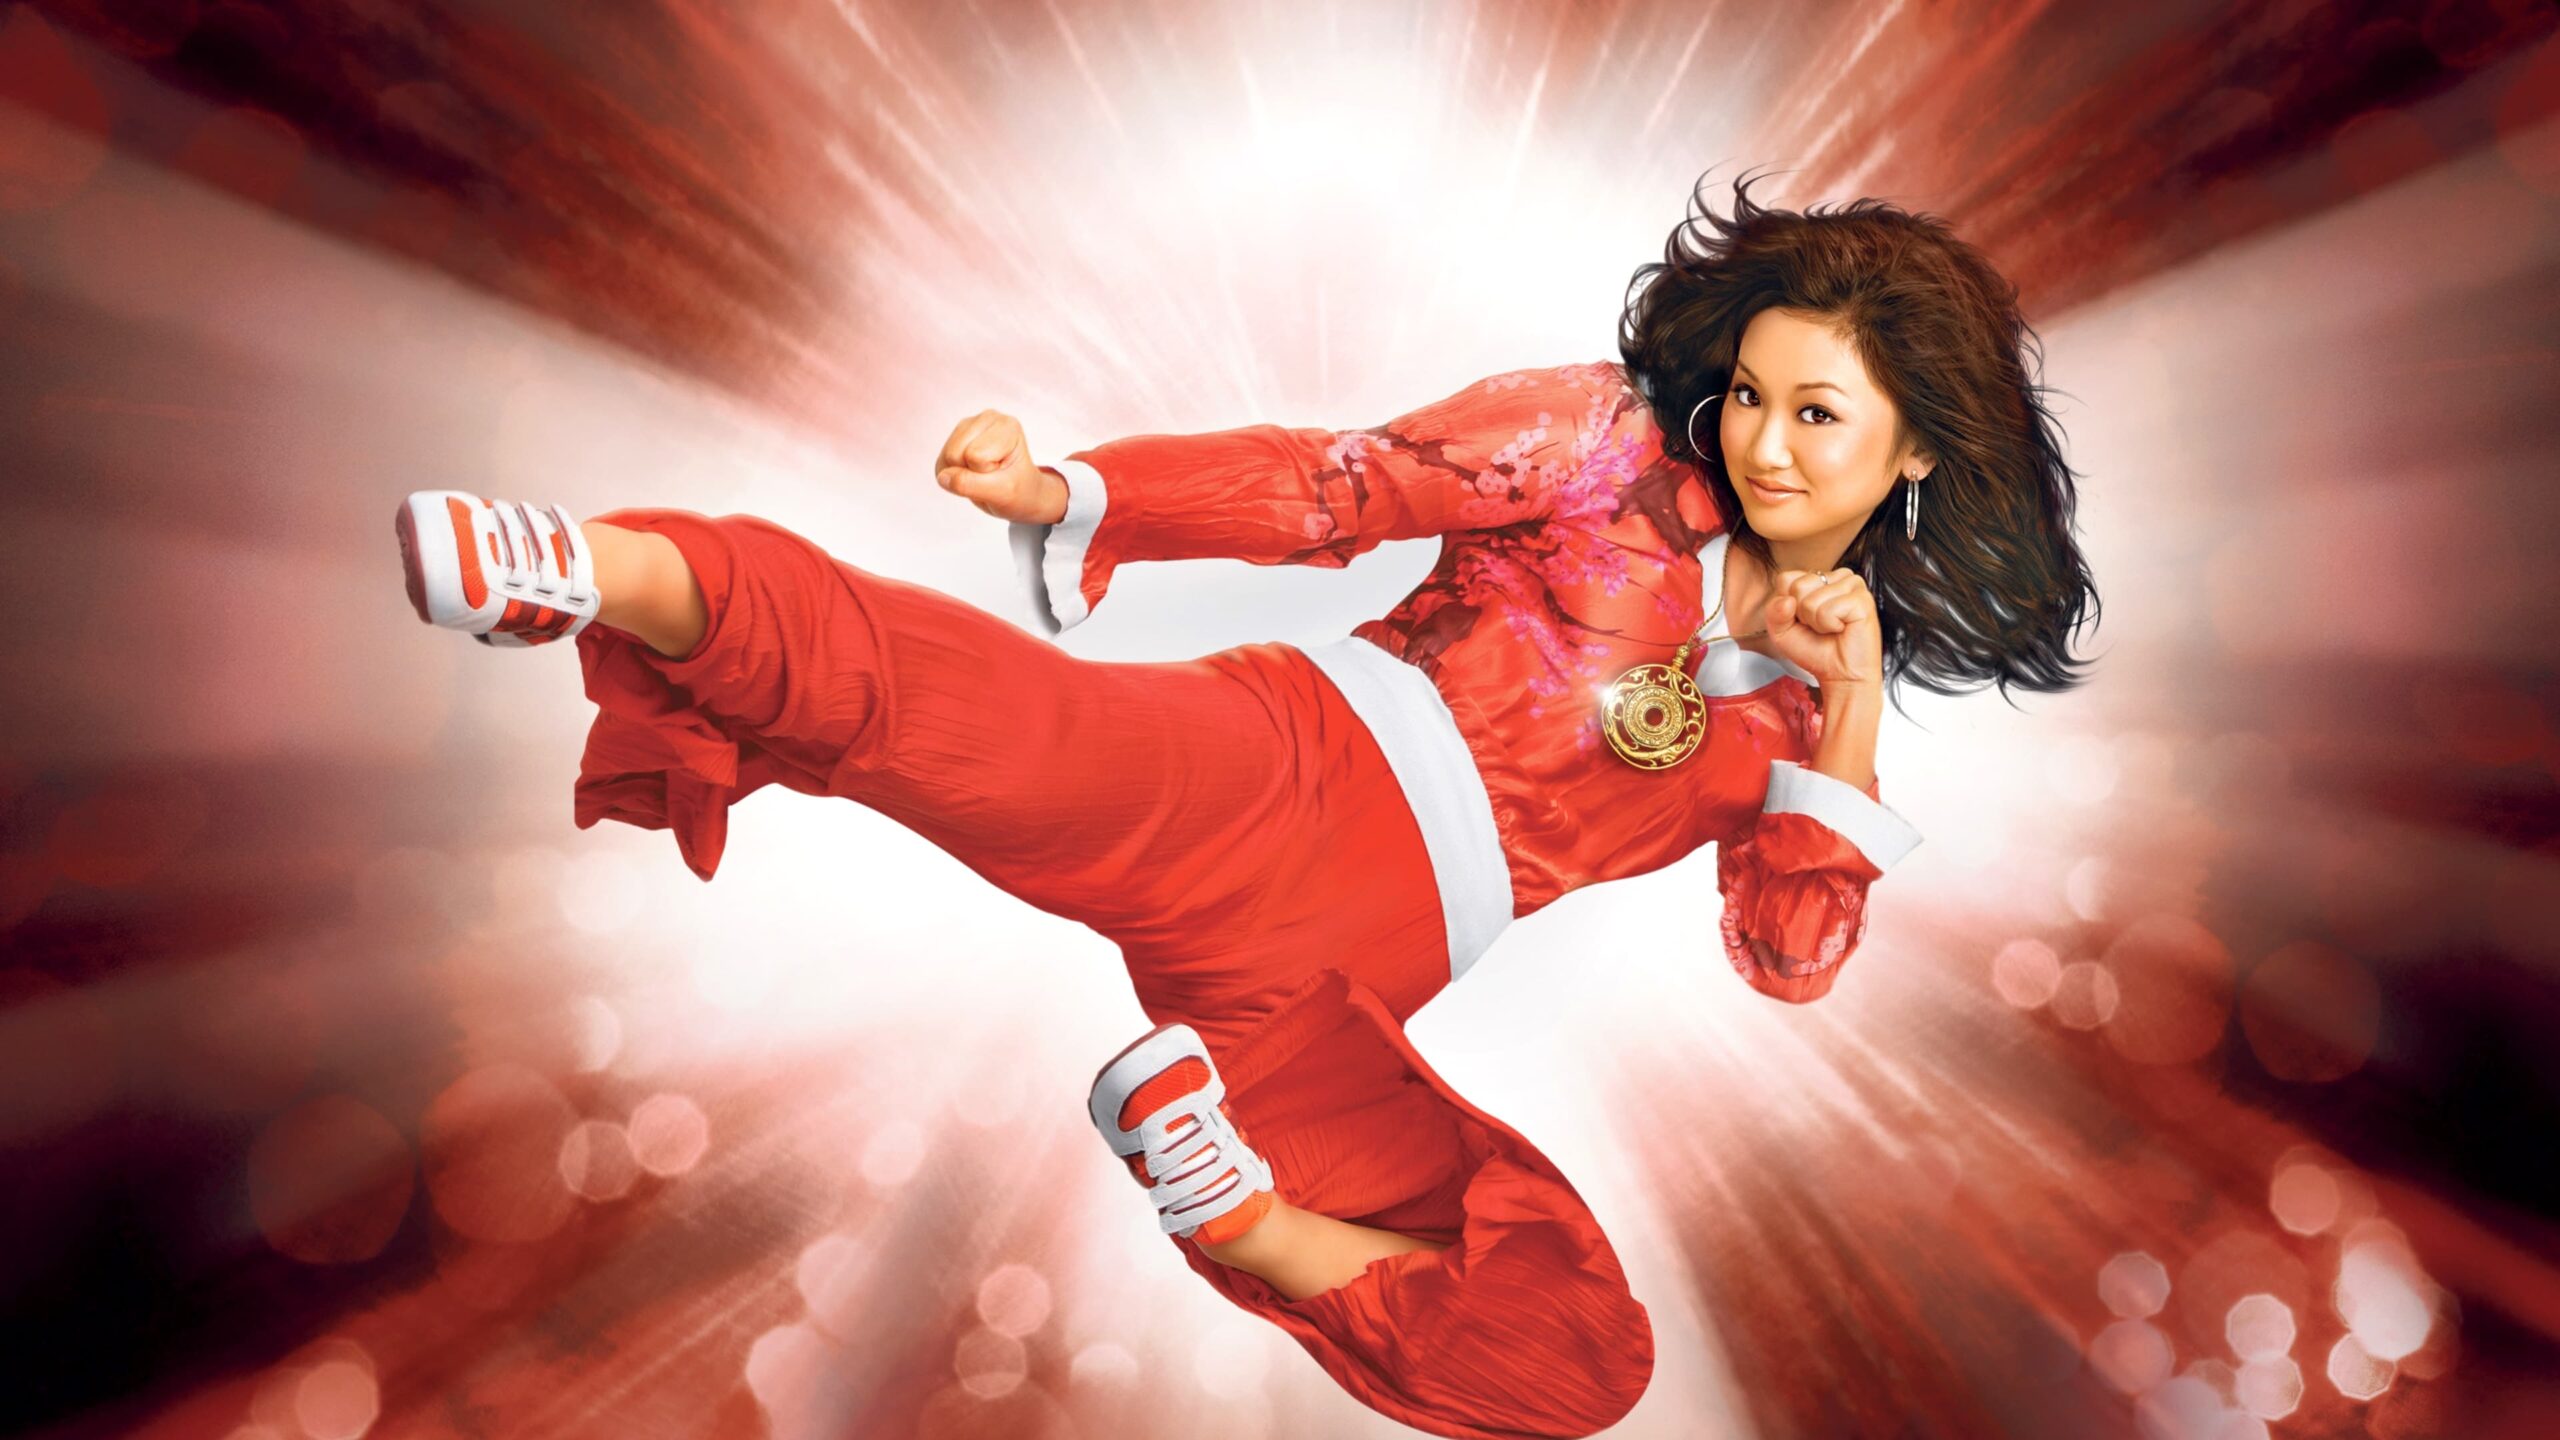 دانلود فیلم Wendy Wu: Homecoming Warrior 2006